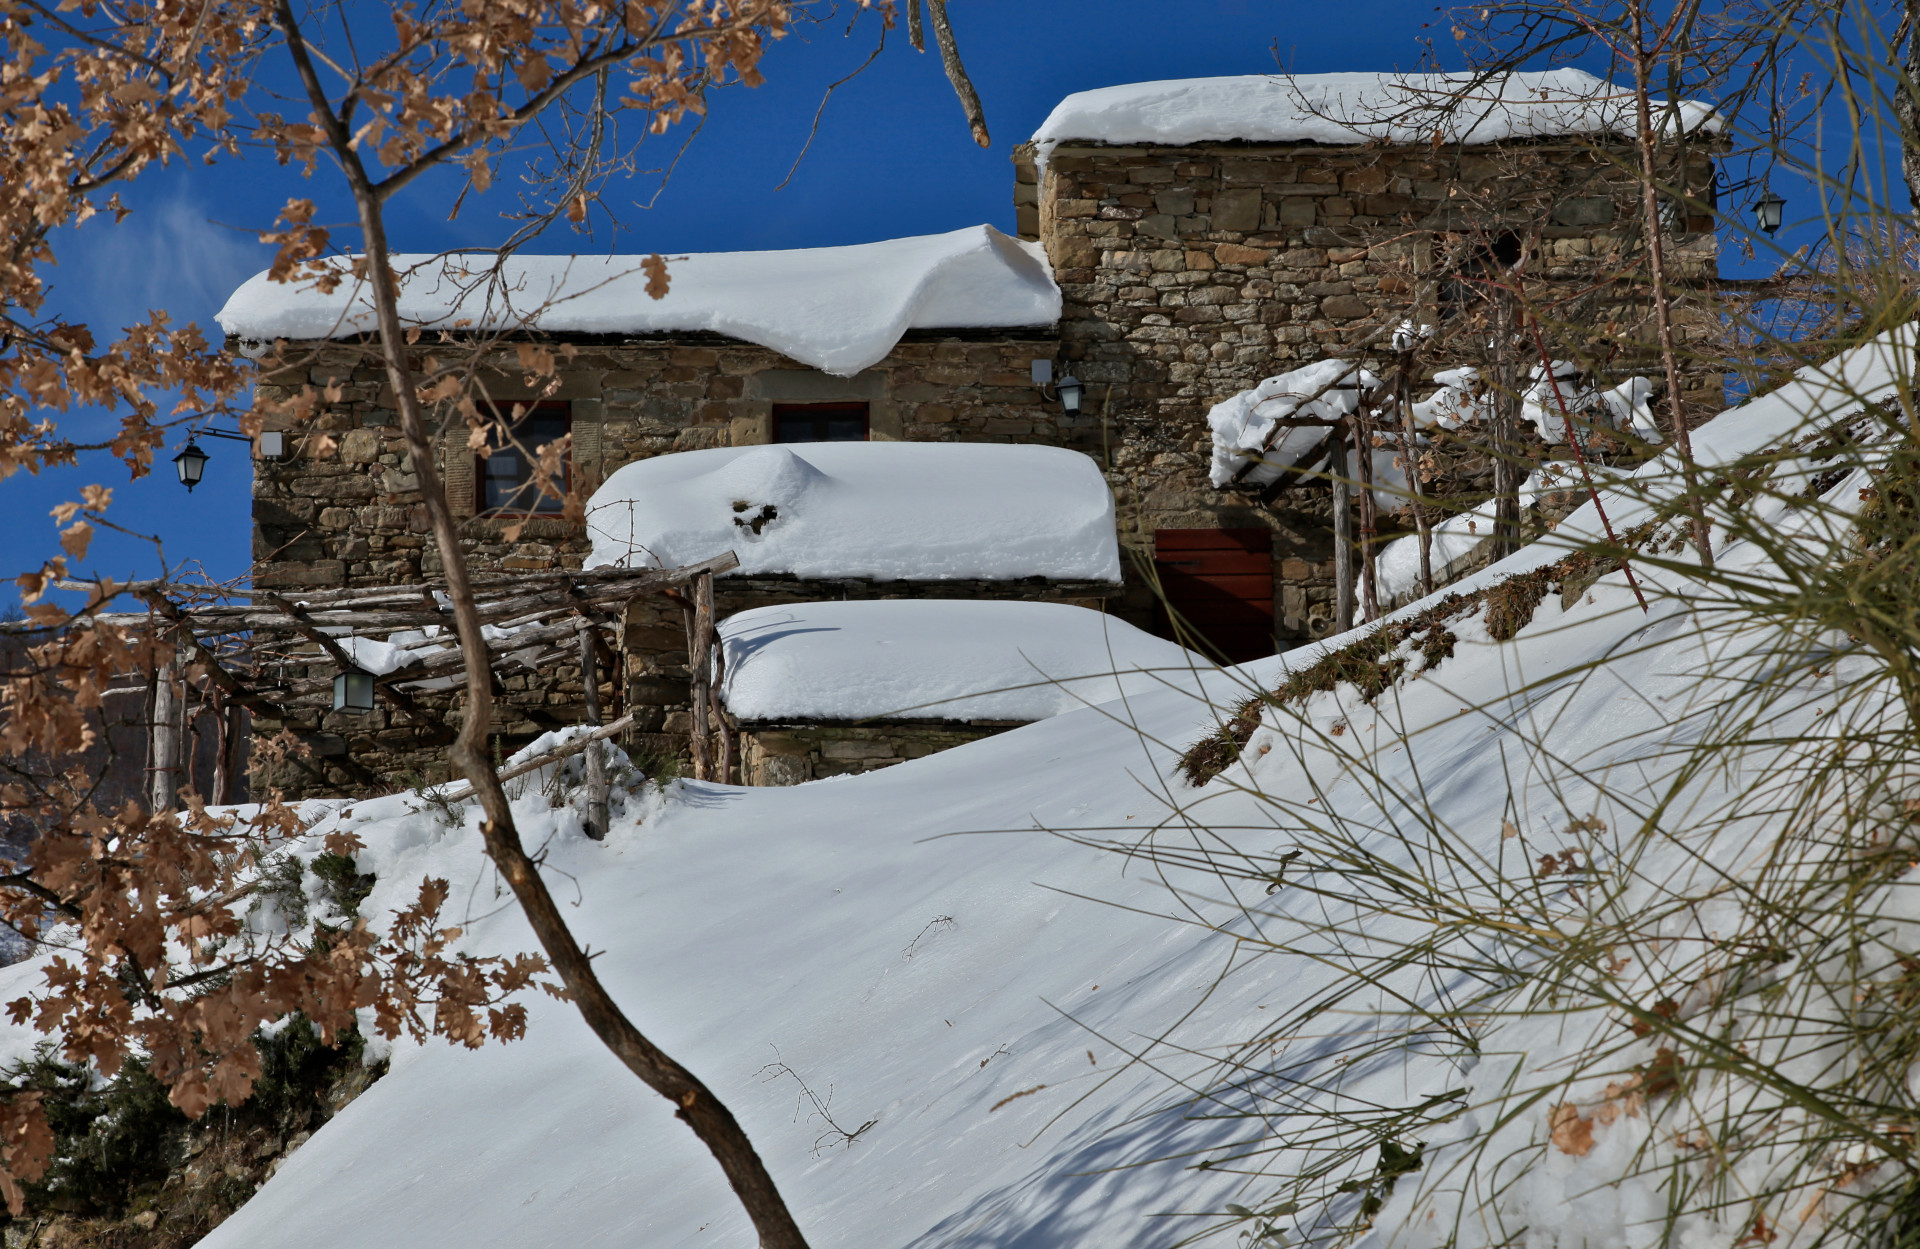 Fulvio Di Rosa: Borgo di Vagli under the snow